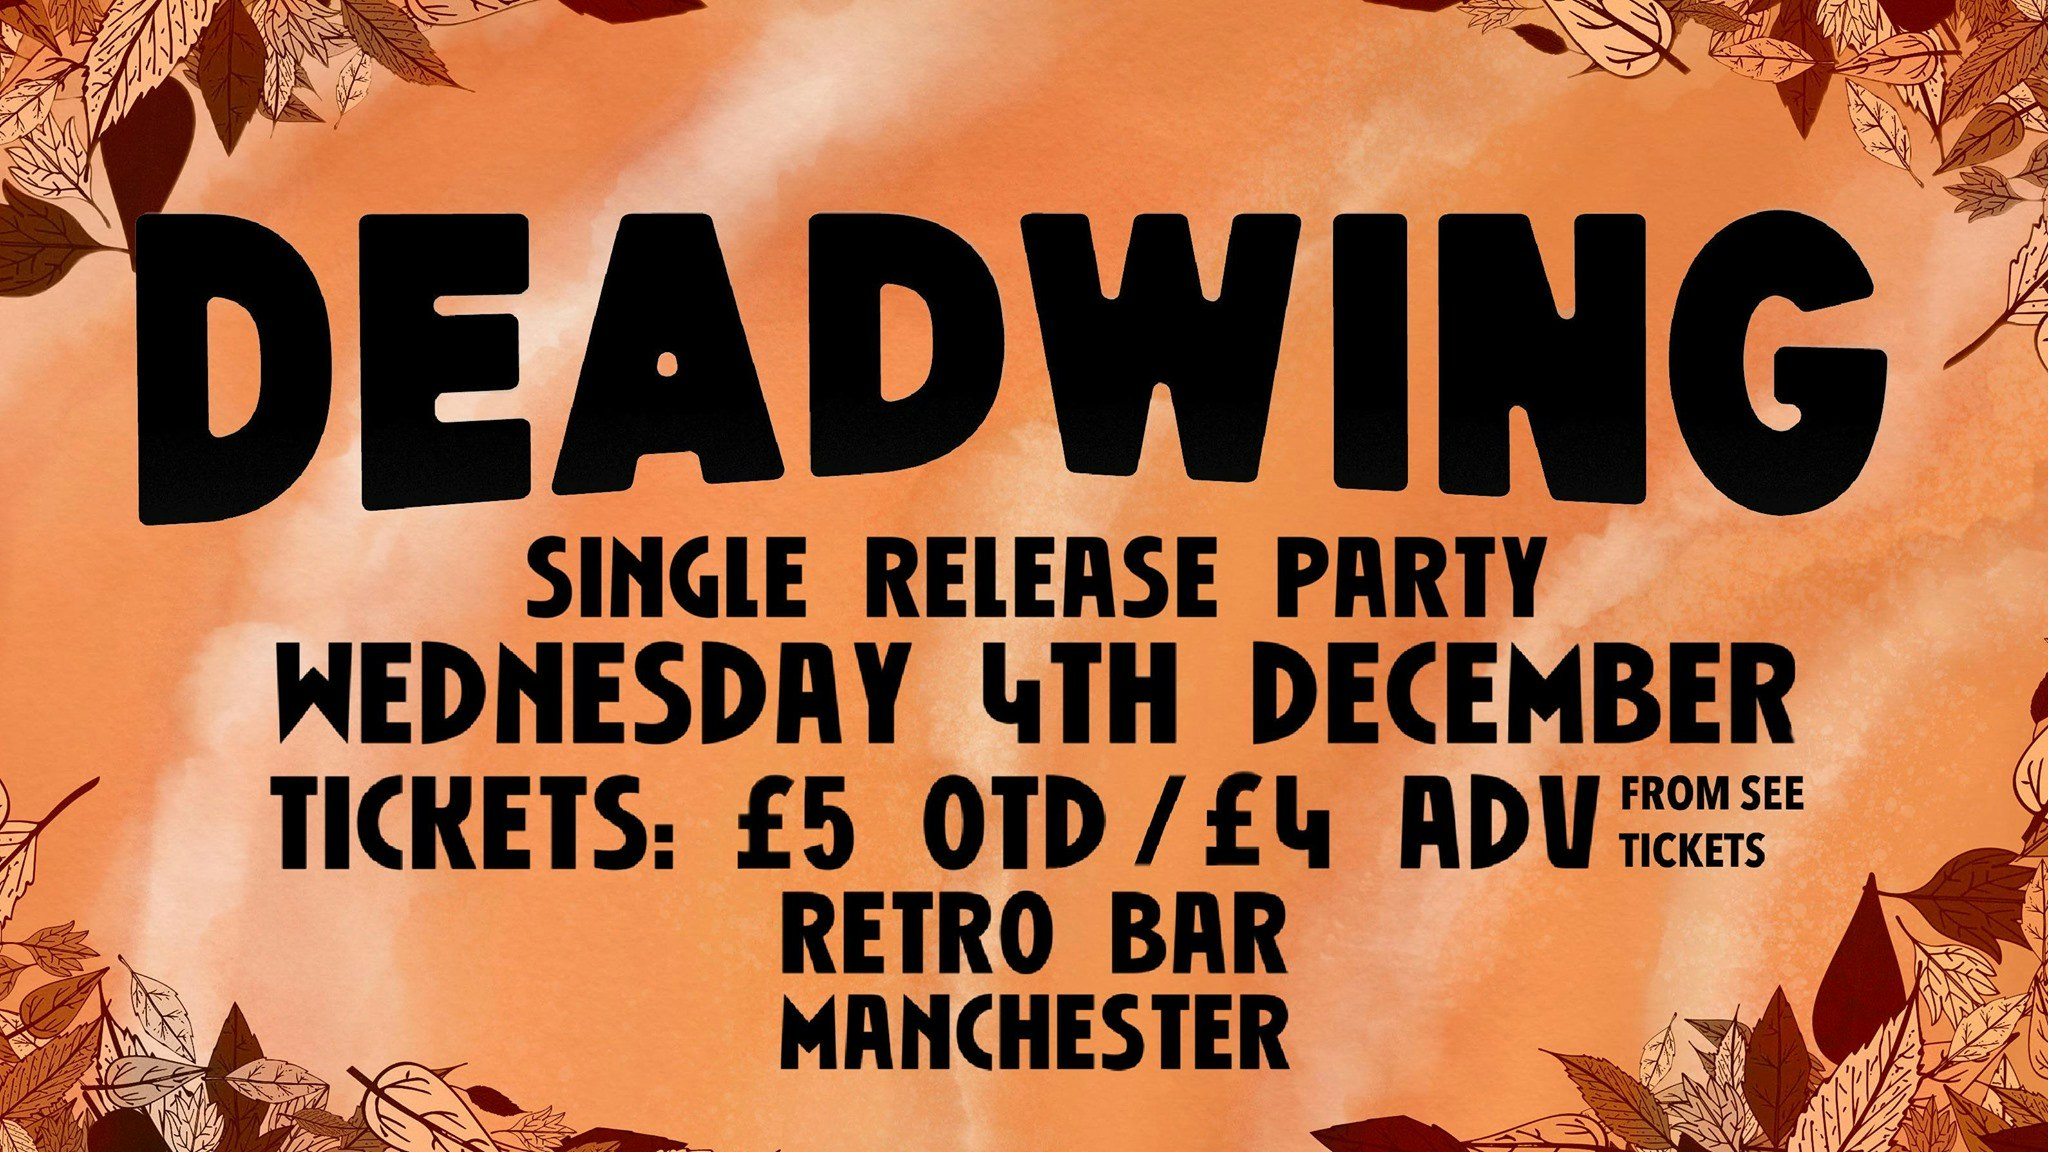 Deadwing ‘Start Again’ Single Release Party